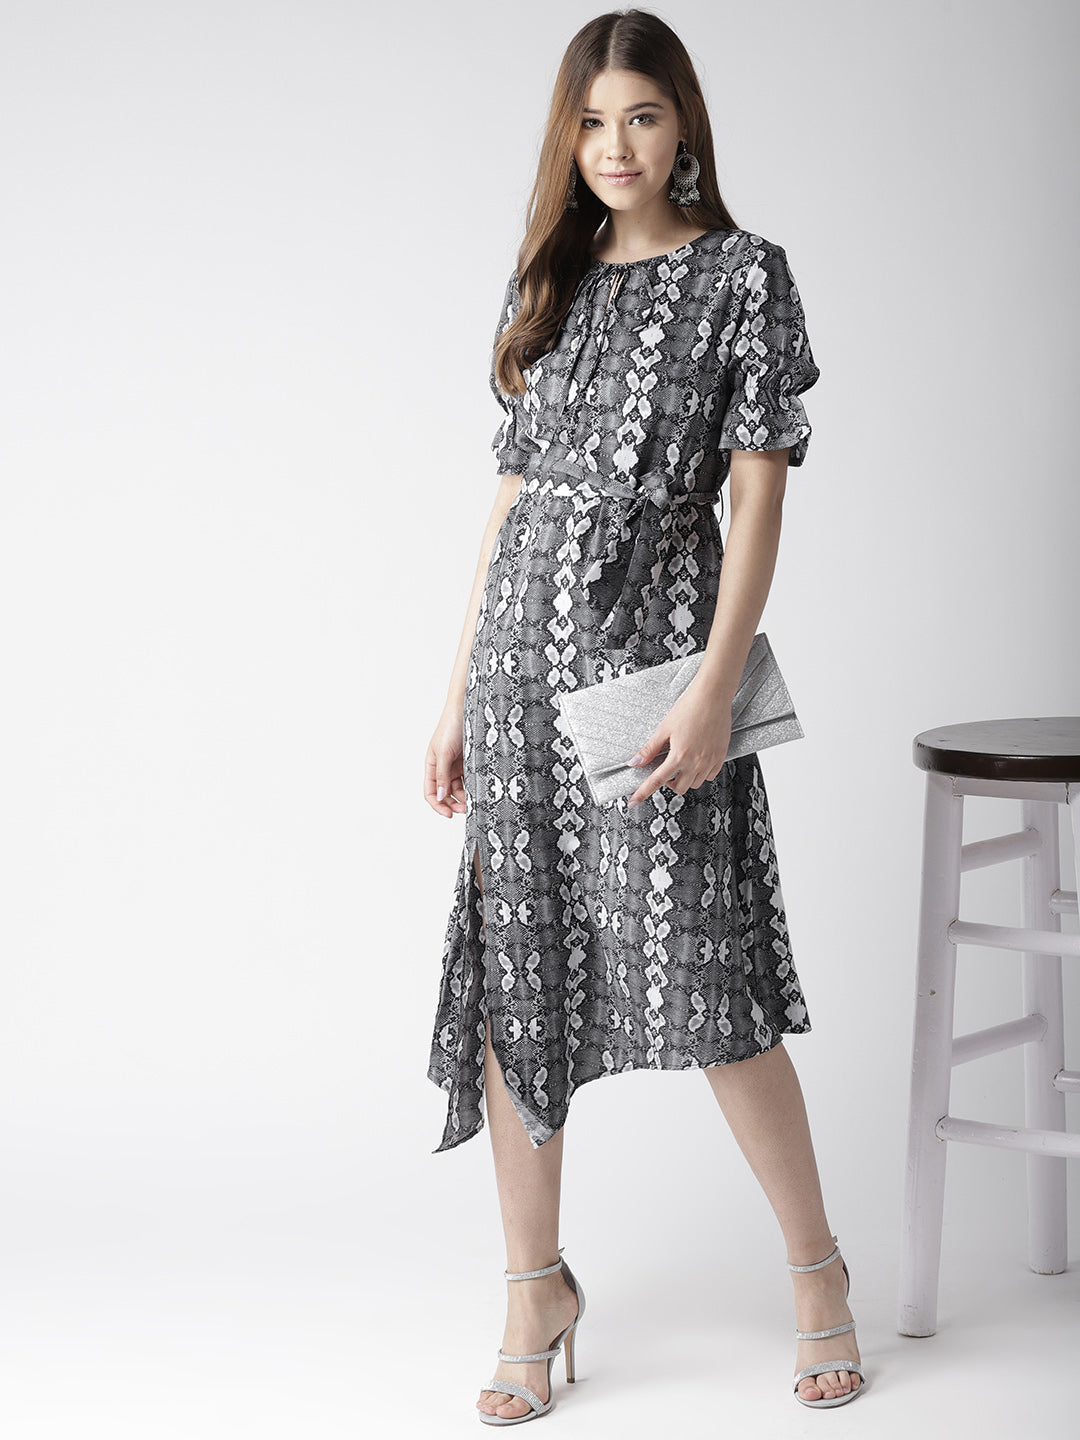 Women's Black and White Snake Print Asymmetric Hemline Dress